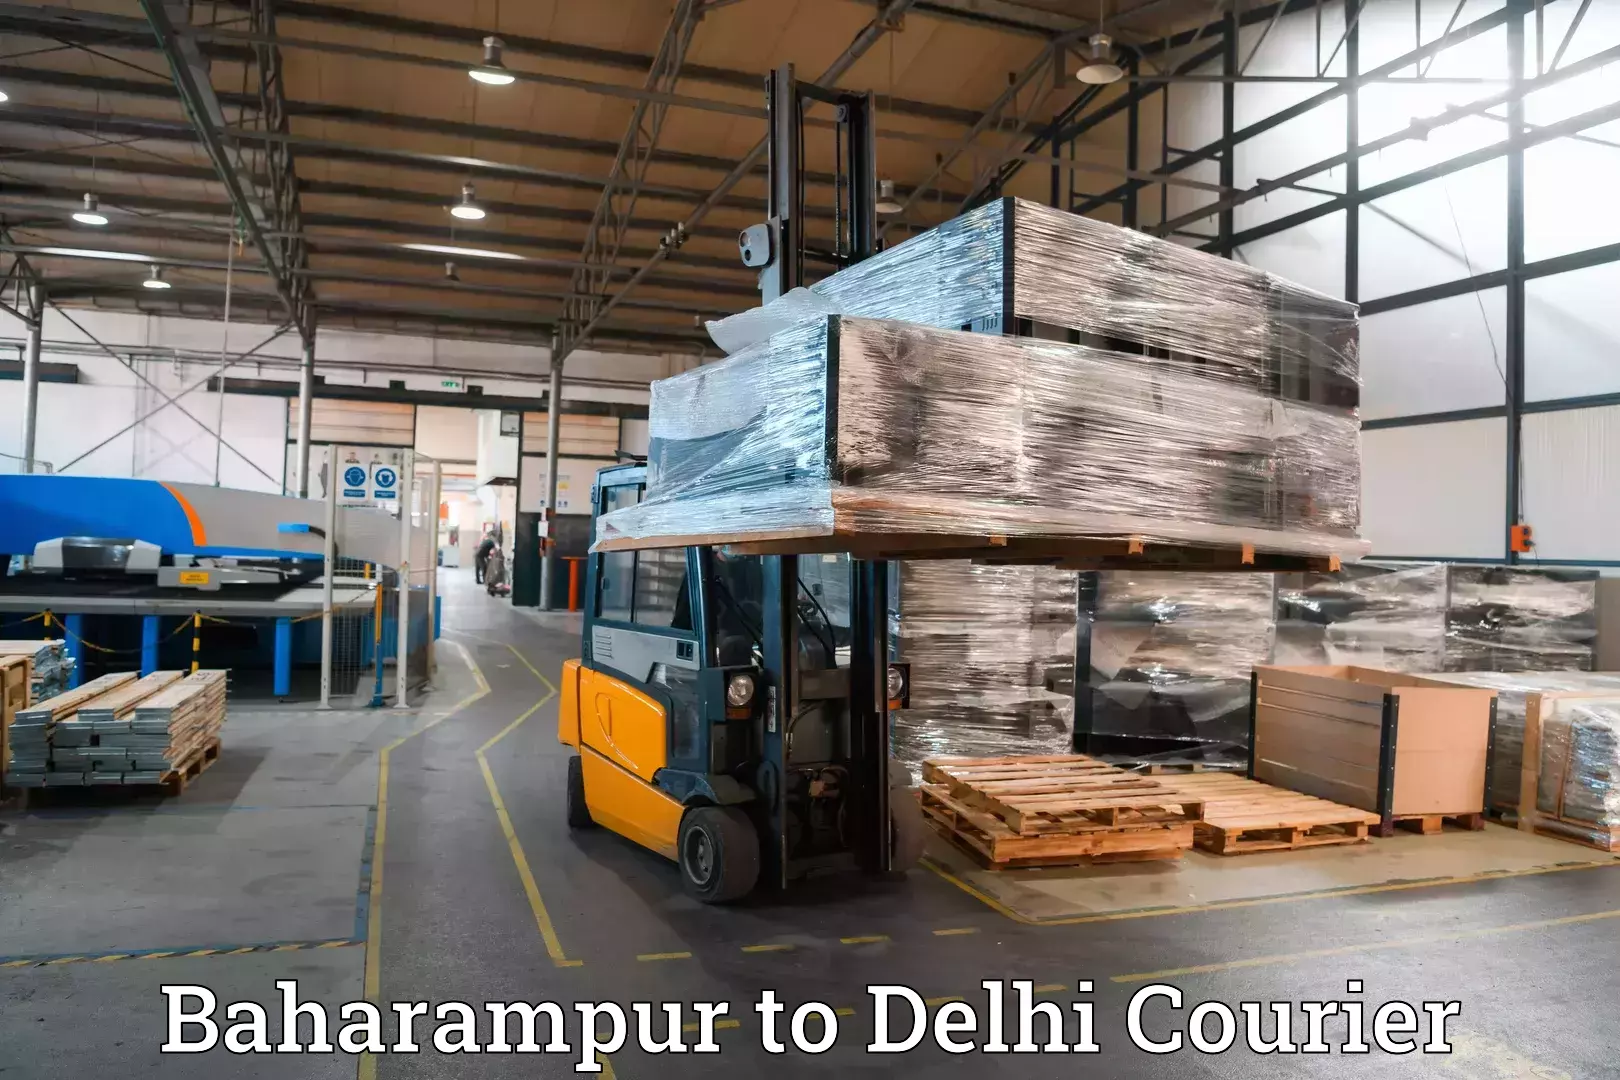 Luggage transport company Baharampur to Kalkaji